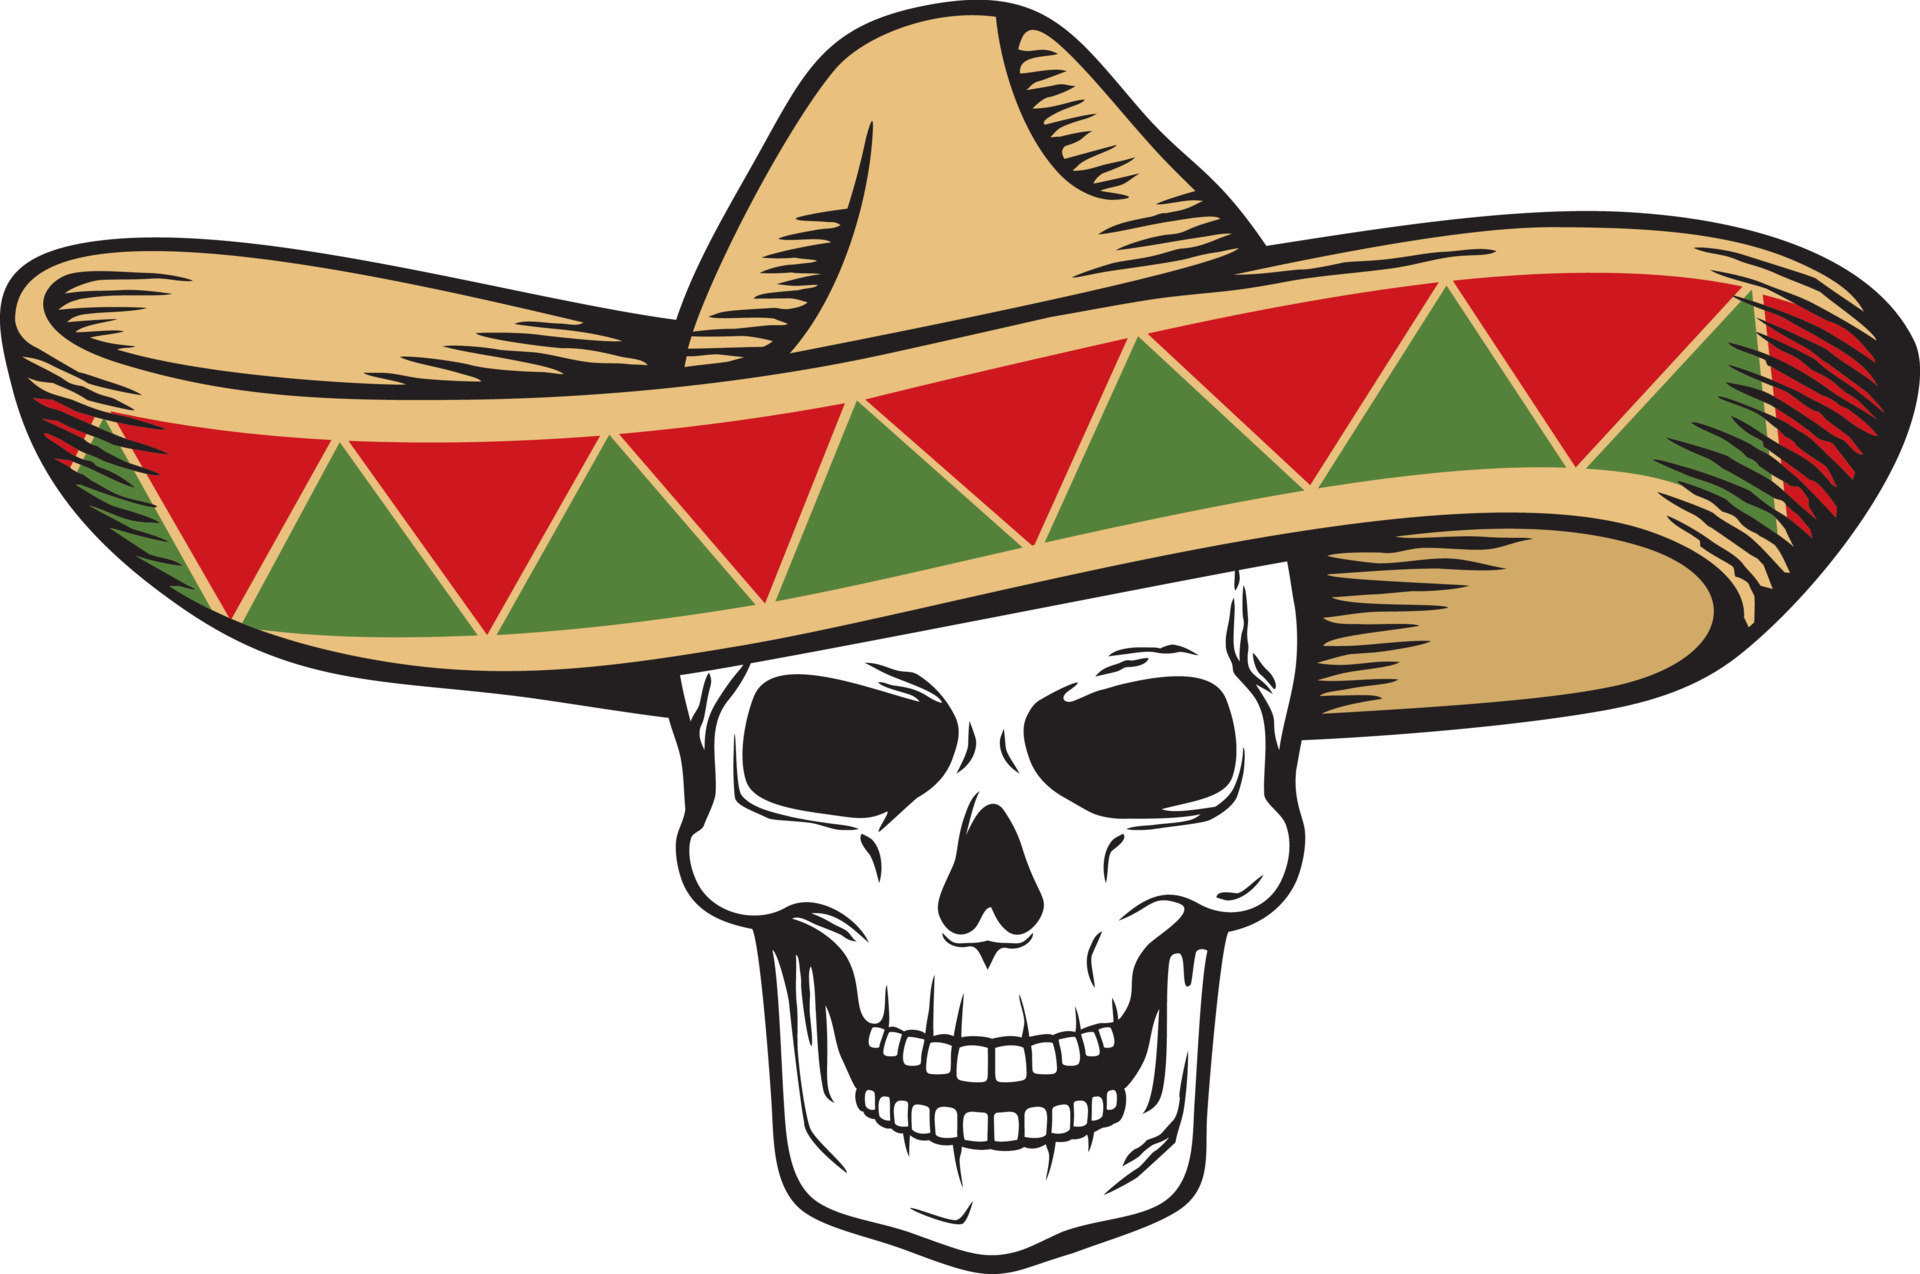 sombrero - messicano cappello e umano cranio. vettore illustrazione.  15620188 Arte vettoriale a Vecteezy